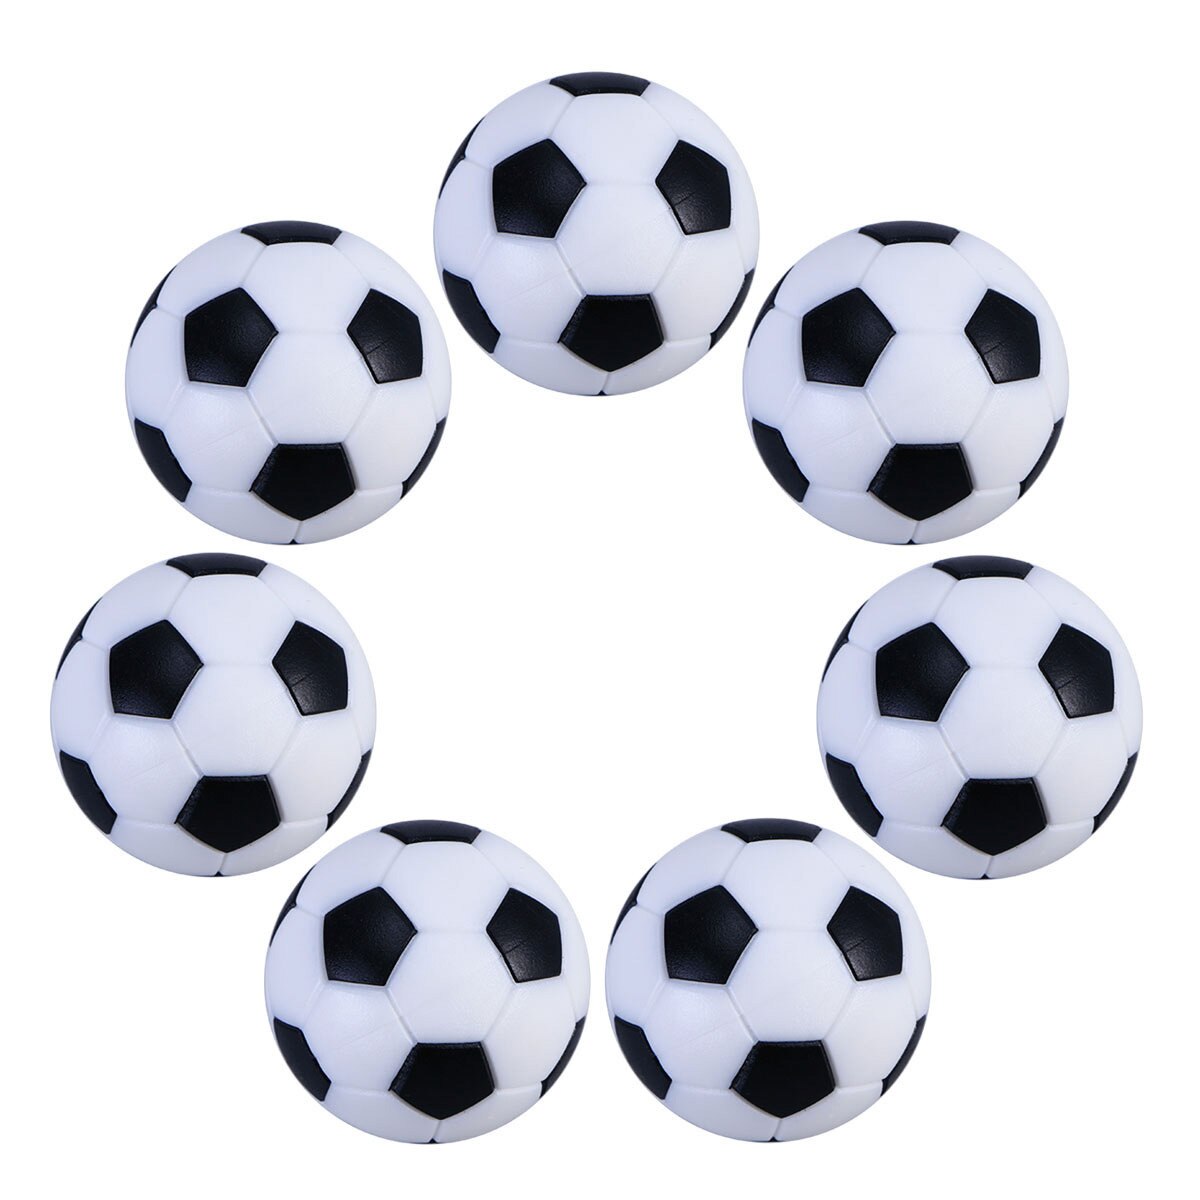 공 테이블 Foosball Soccerfootball 미니 교체 게임 탁상 작은 공식 스포츠 블랙 화이트 Foosballs 액세서리 축구